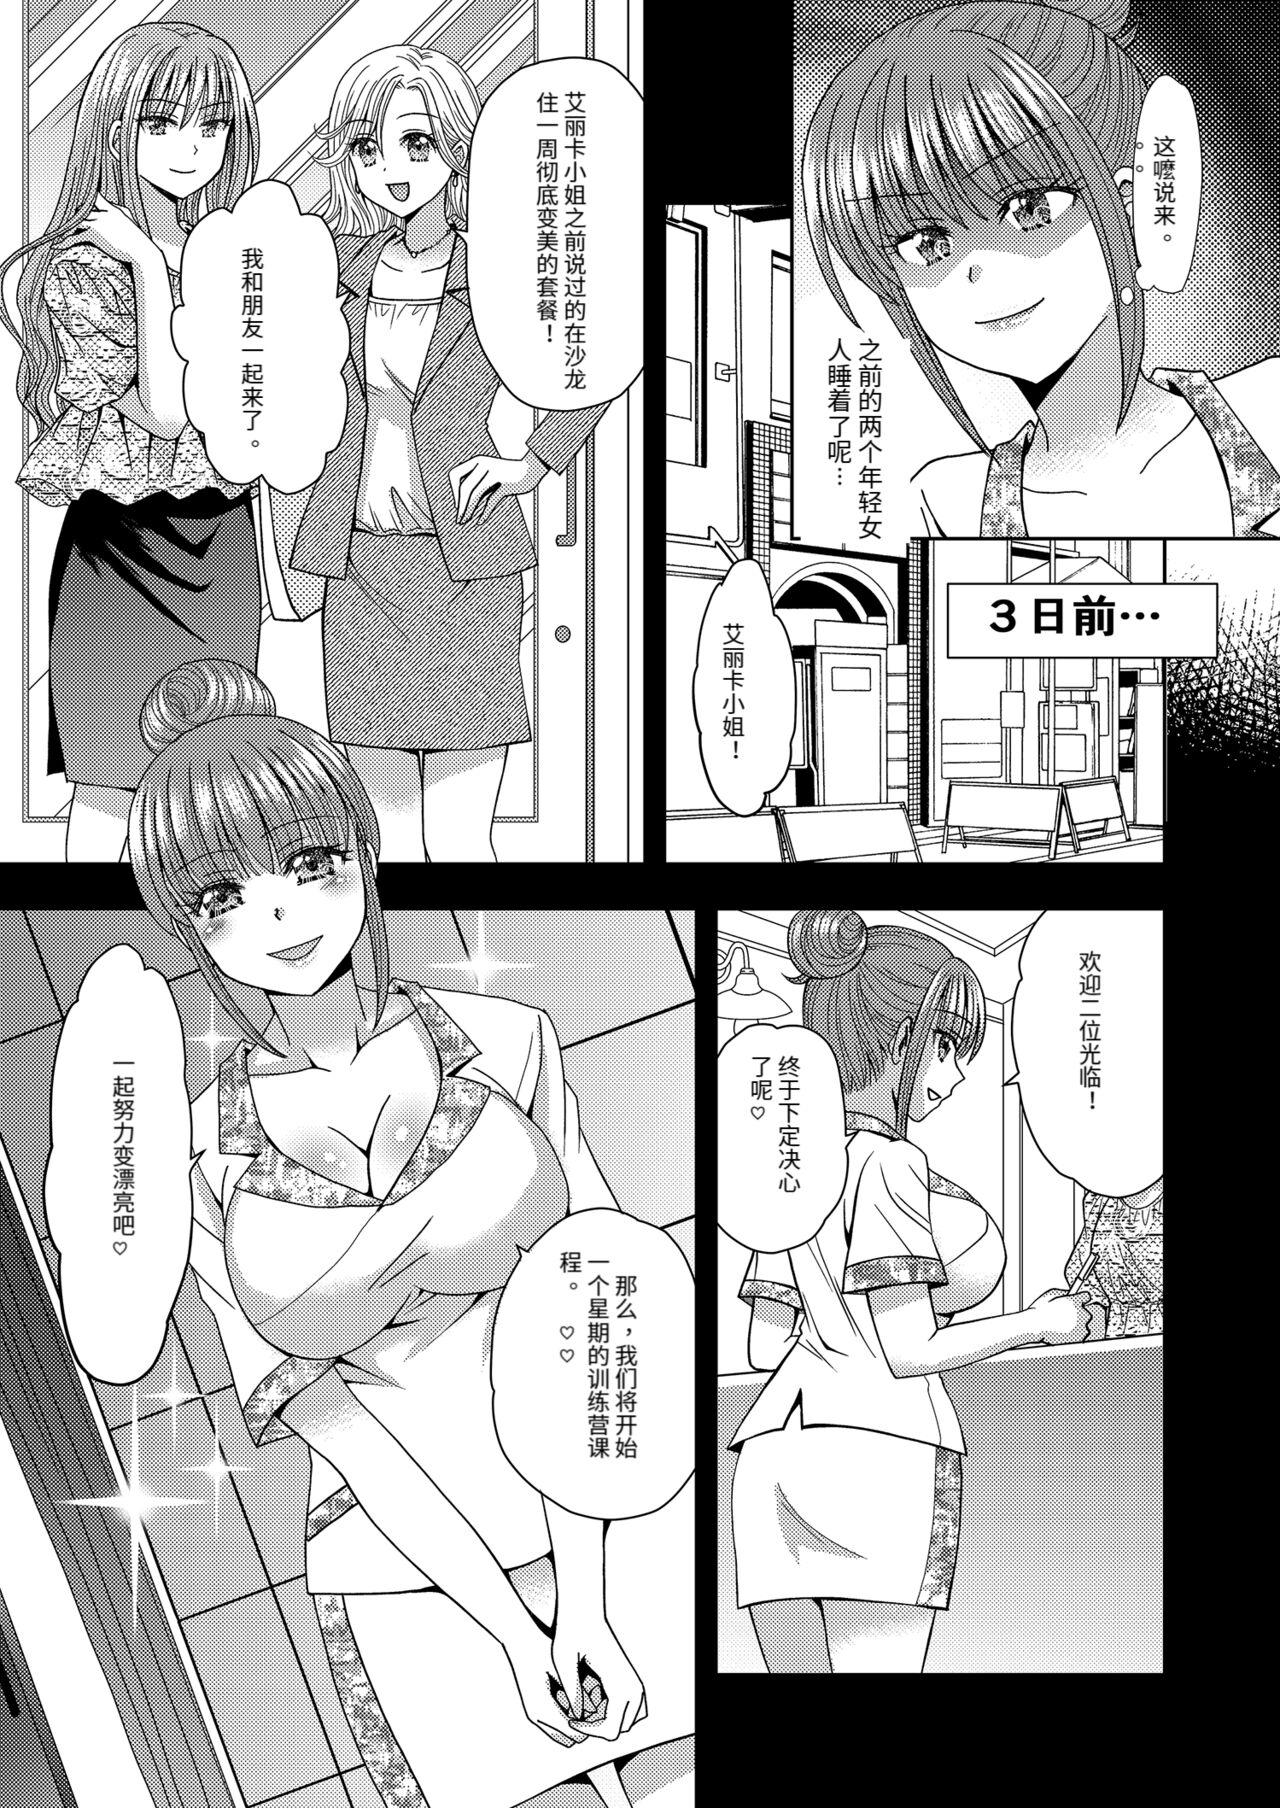 Short Ore ga Watashi ni Naru Tame no Biyou Salon 3 - Original Stretching - Page 3